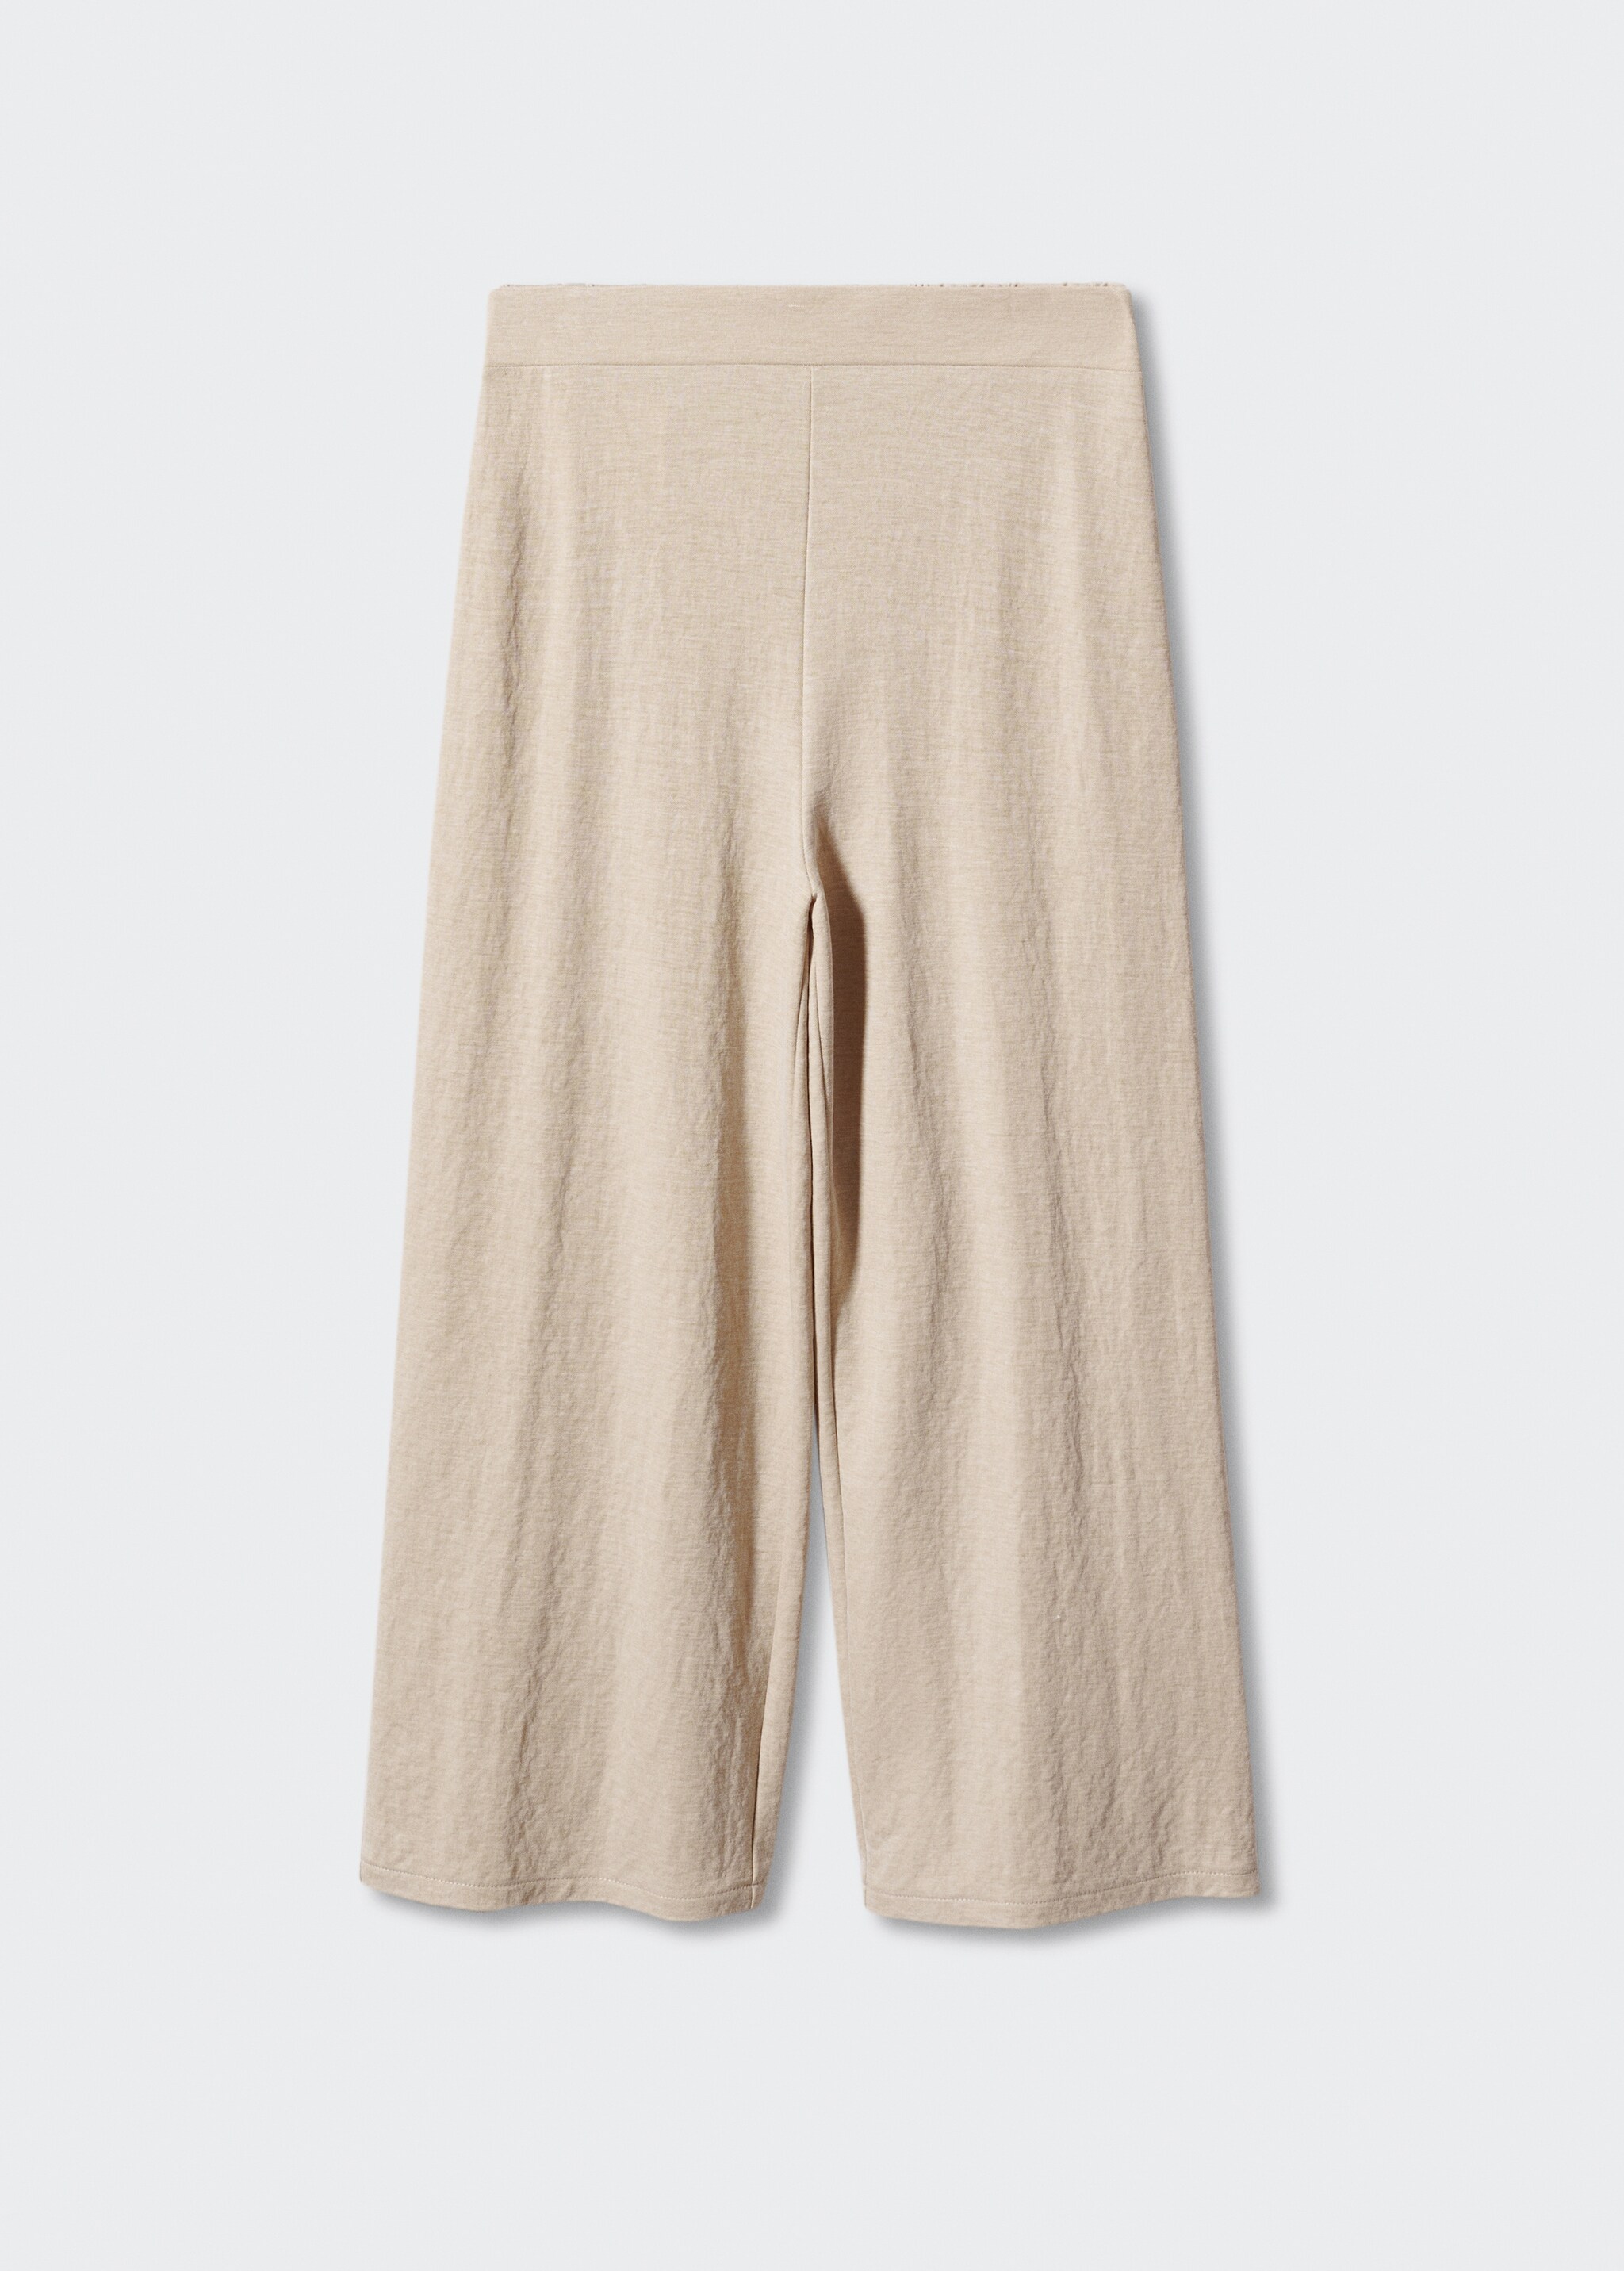 Pantalon style jupe-culotte crop - Article sans modèle